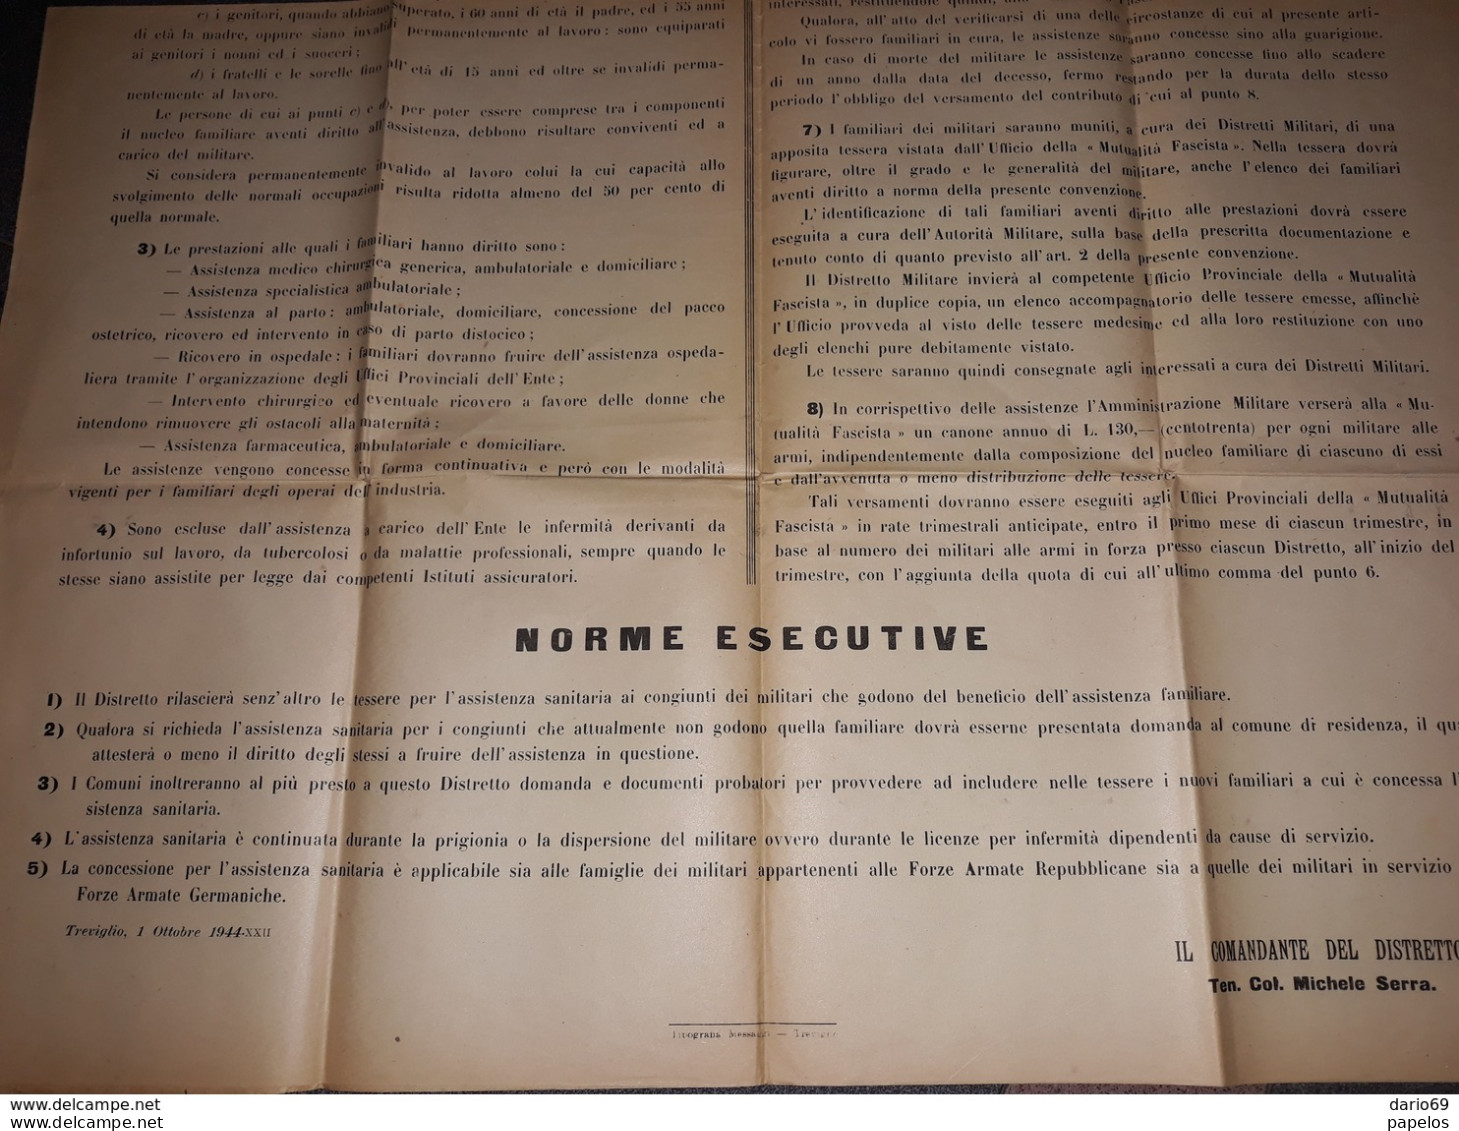 1944   MANIFESTO  DISTRETTO MILITARE DI TREVIGLIO  ASSISTENZA SANITARIA ALLE FAMIGLIE DEI MILITARI ALLE ARMI - Afiches